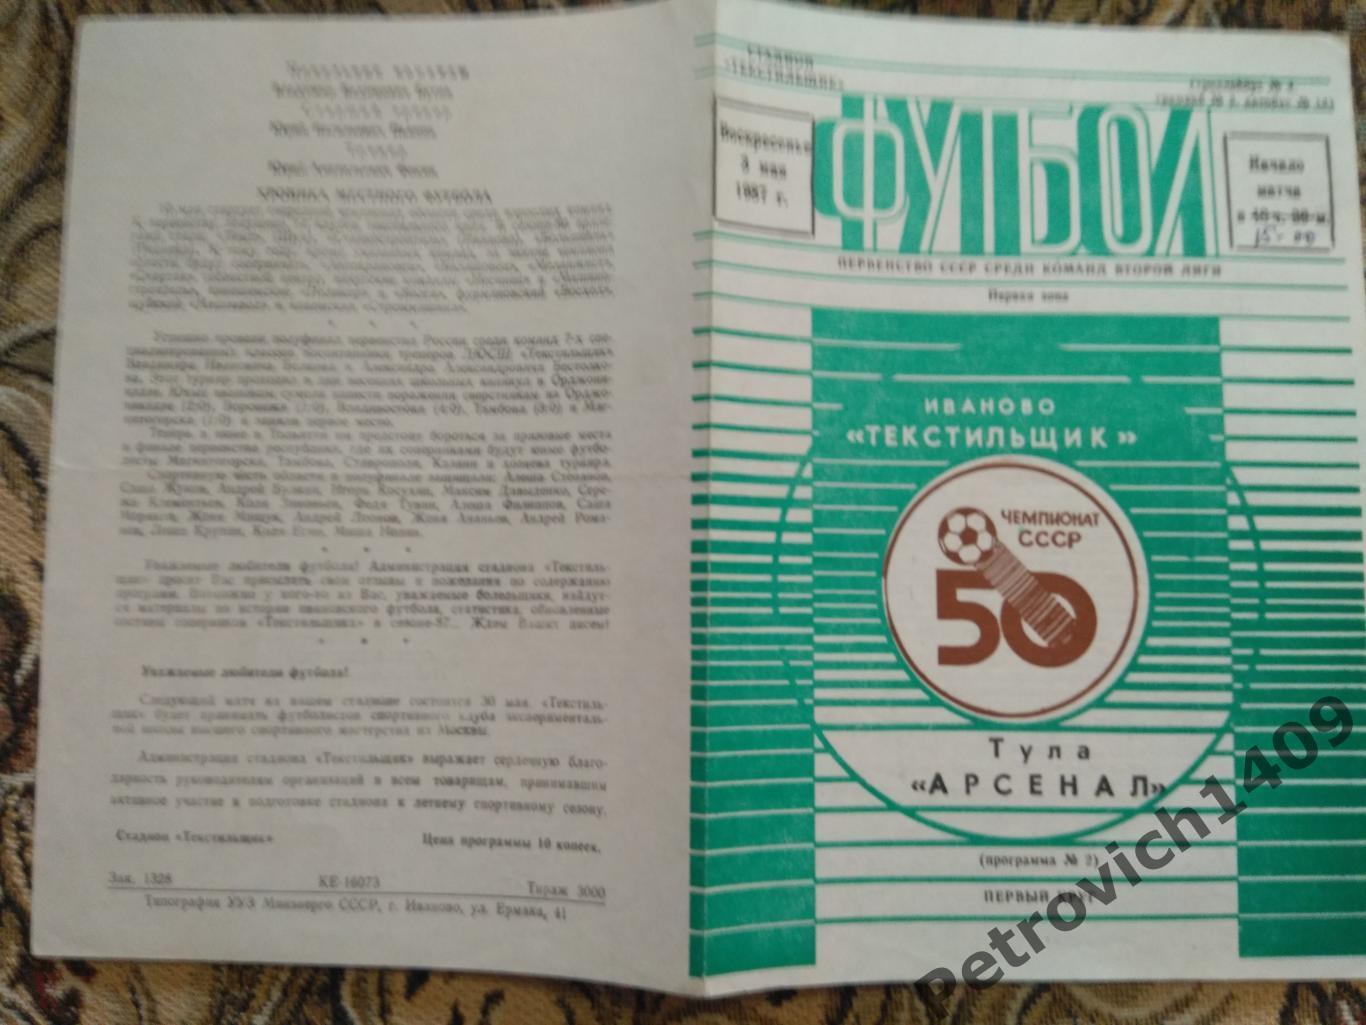 Тексильщик Иваново - Арсенал Тула 3 мая 1987 год